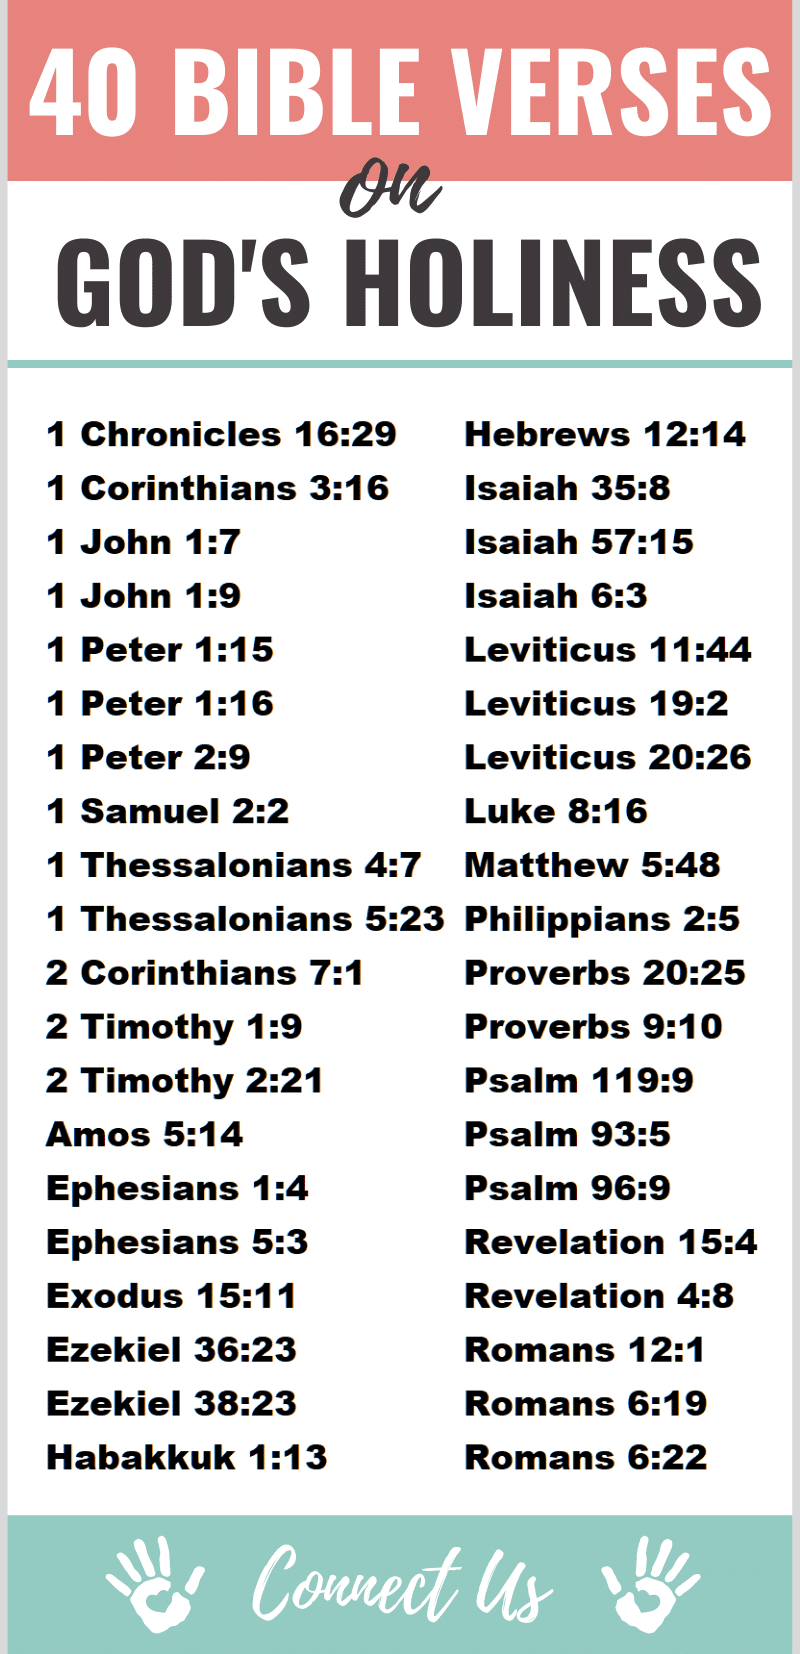 Versículos de la Biblia sobre la santidad de Dios